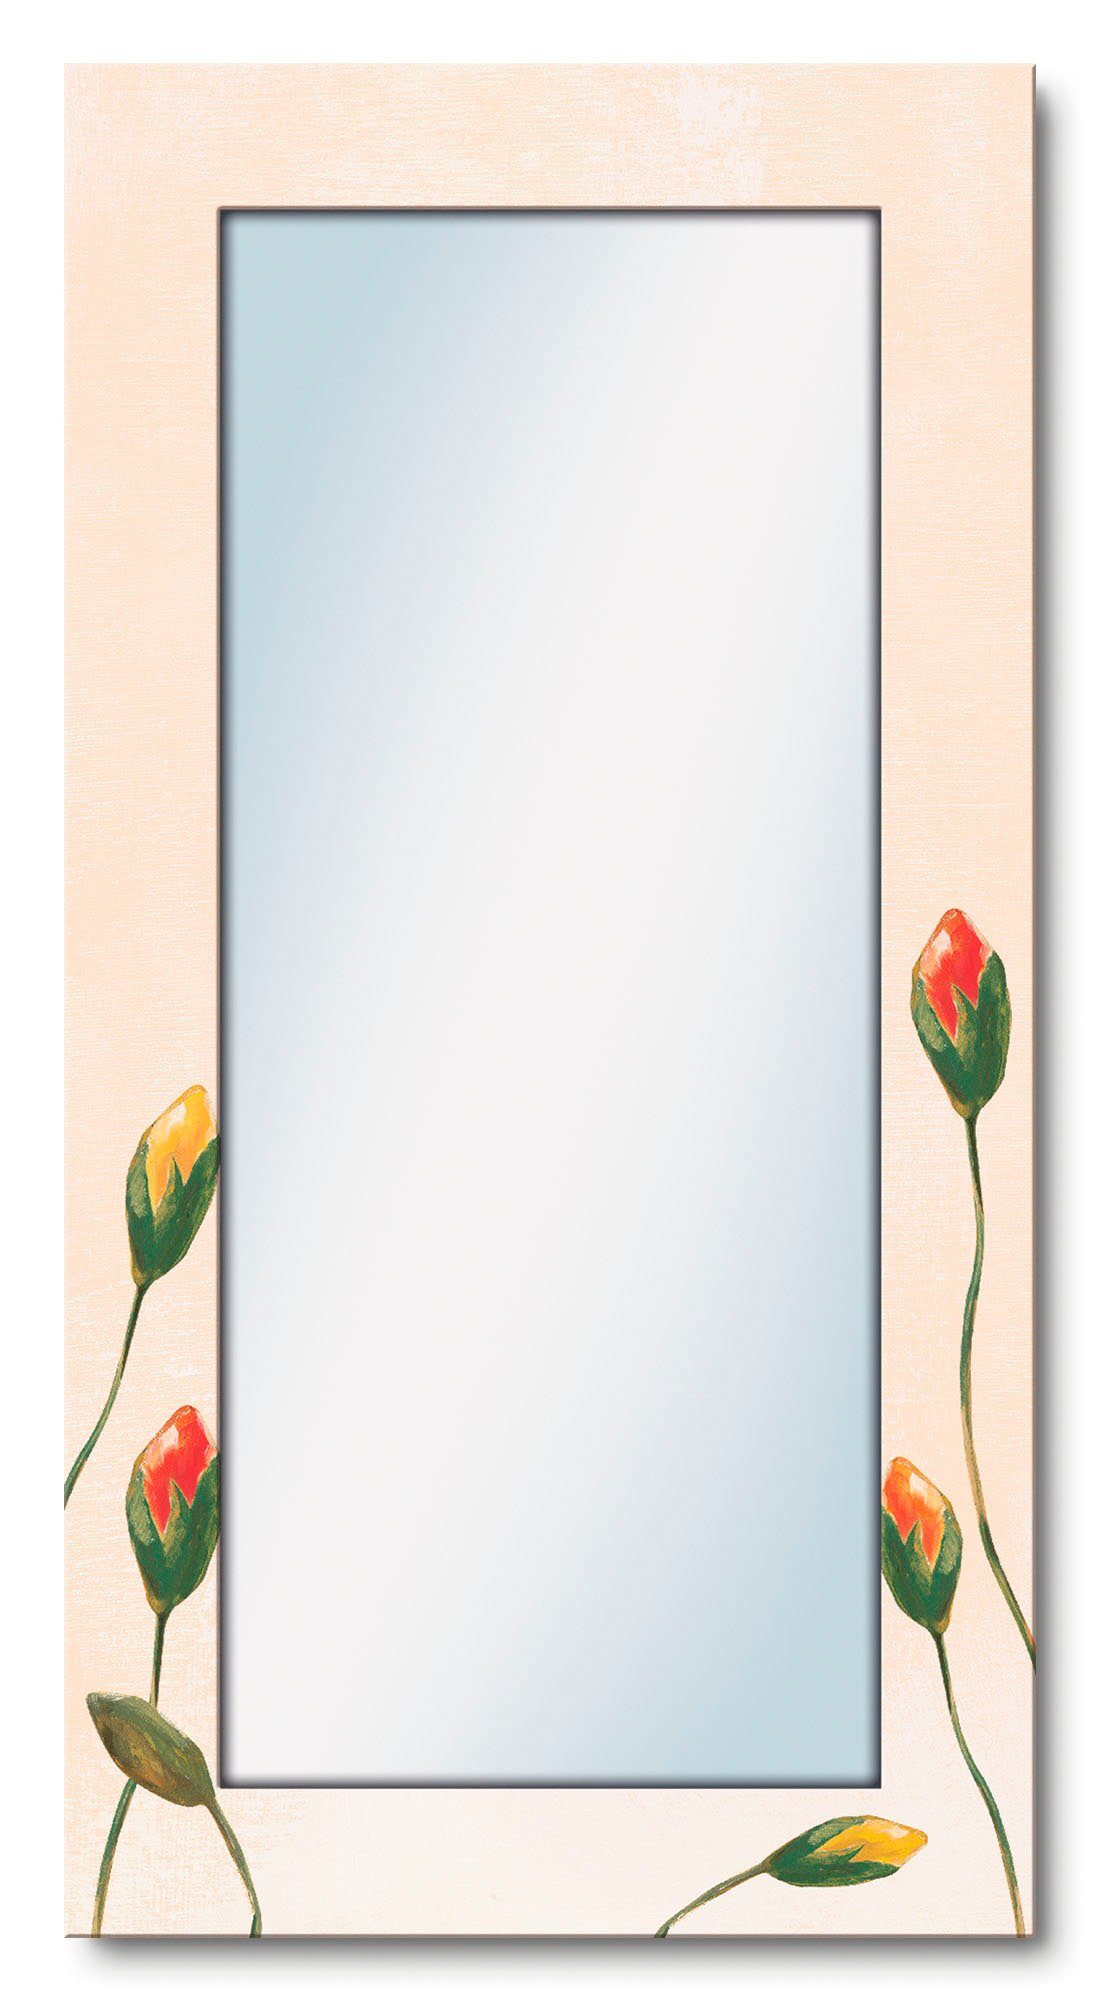 Artland Sierspiegel Veelkleurige klaprozen ingelijste spiegel voor het hele lichaam met motiefrand, geschikt voor kleine, smalle hal, halspiegel, mirror spiegel omrand om op te han